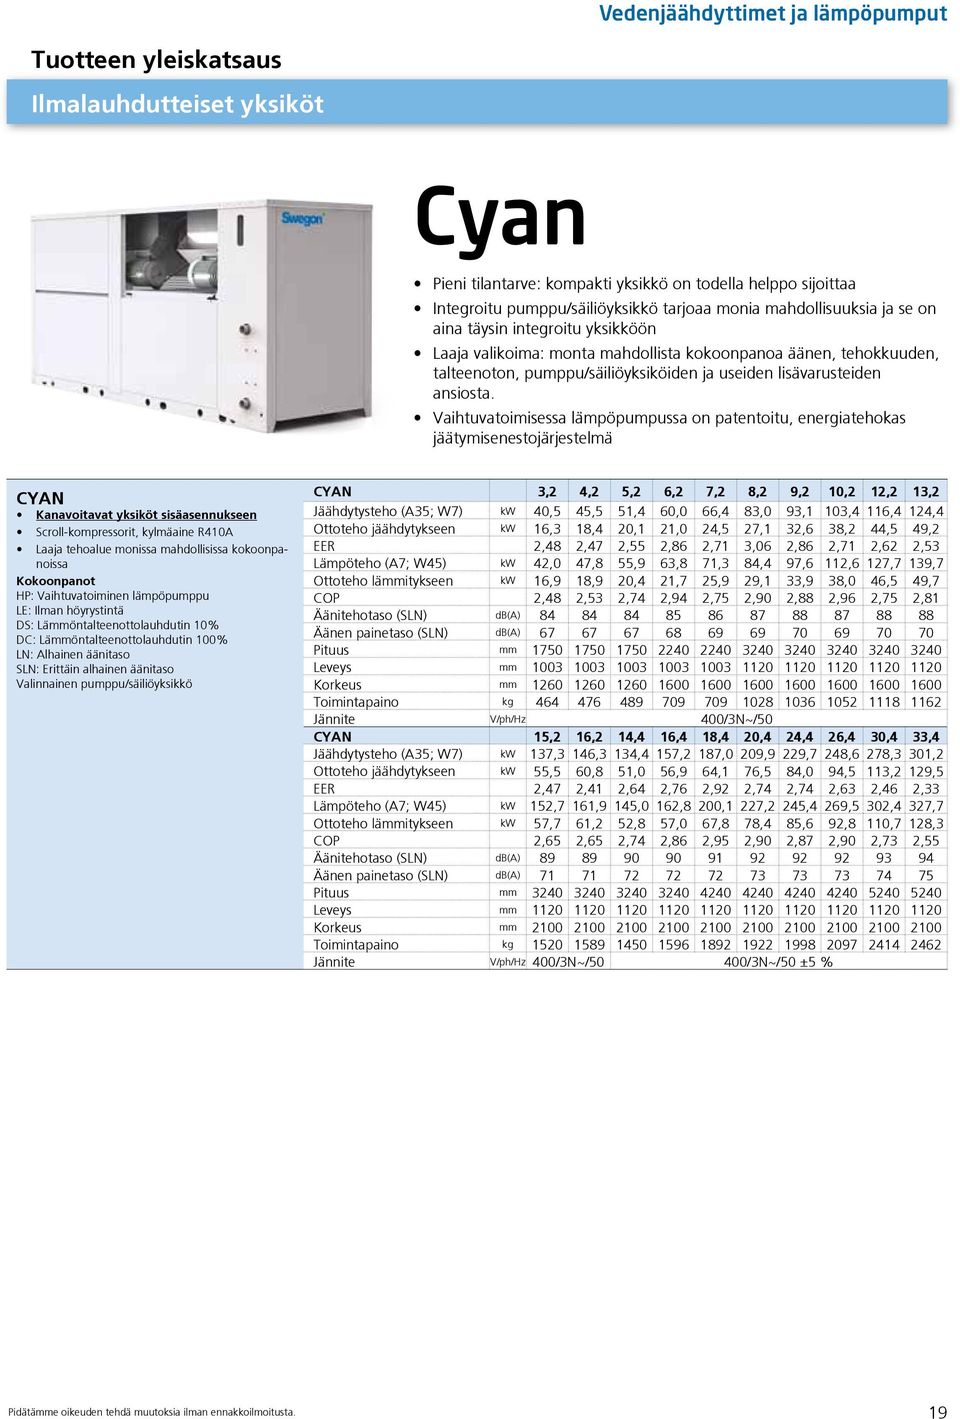 Vaihtuvatoimisessa lämpöpumpussa on patentoitu, energiatehokas jäätymisenestojärjestelmä CYAN Kanavoitavat yksiköt sisäasennukseen Scroll-kompressorit, kylmäaine R410A Laaja tehoalue monissa